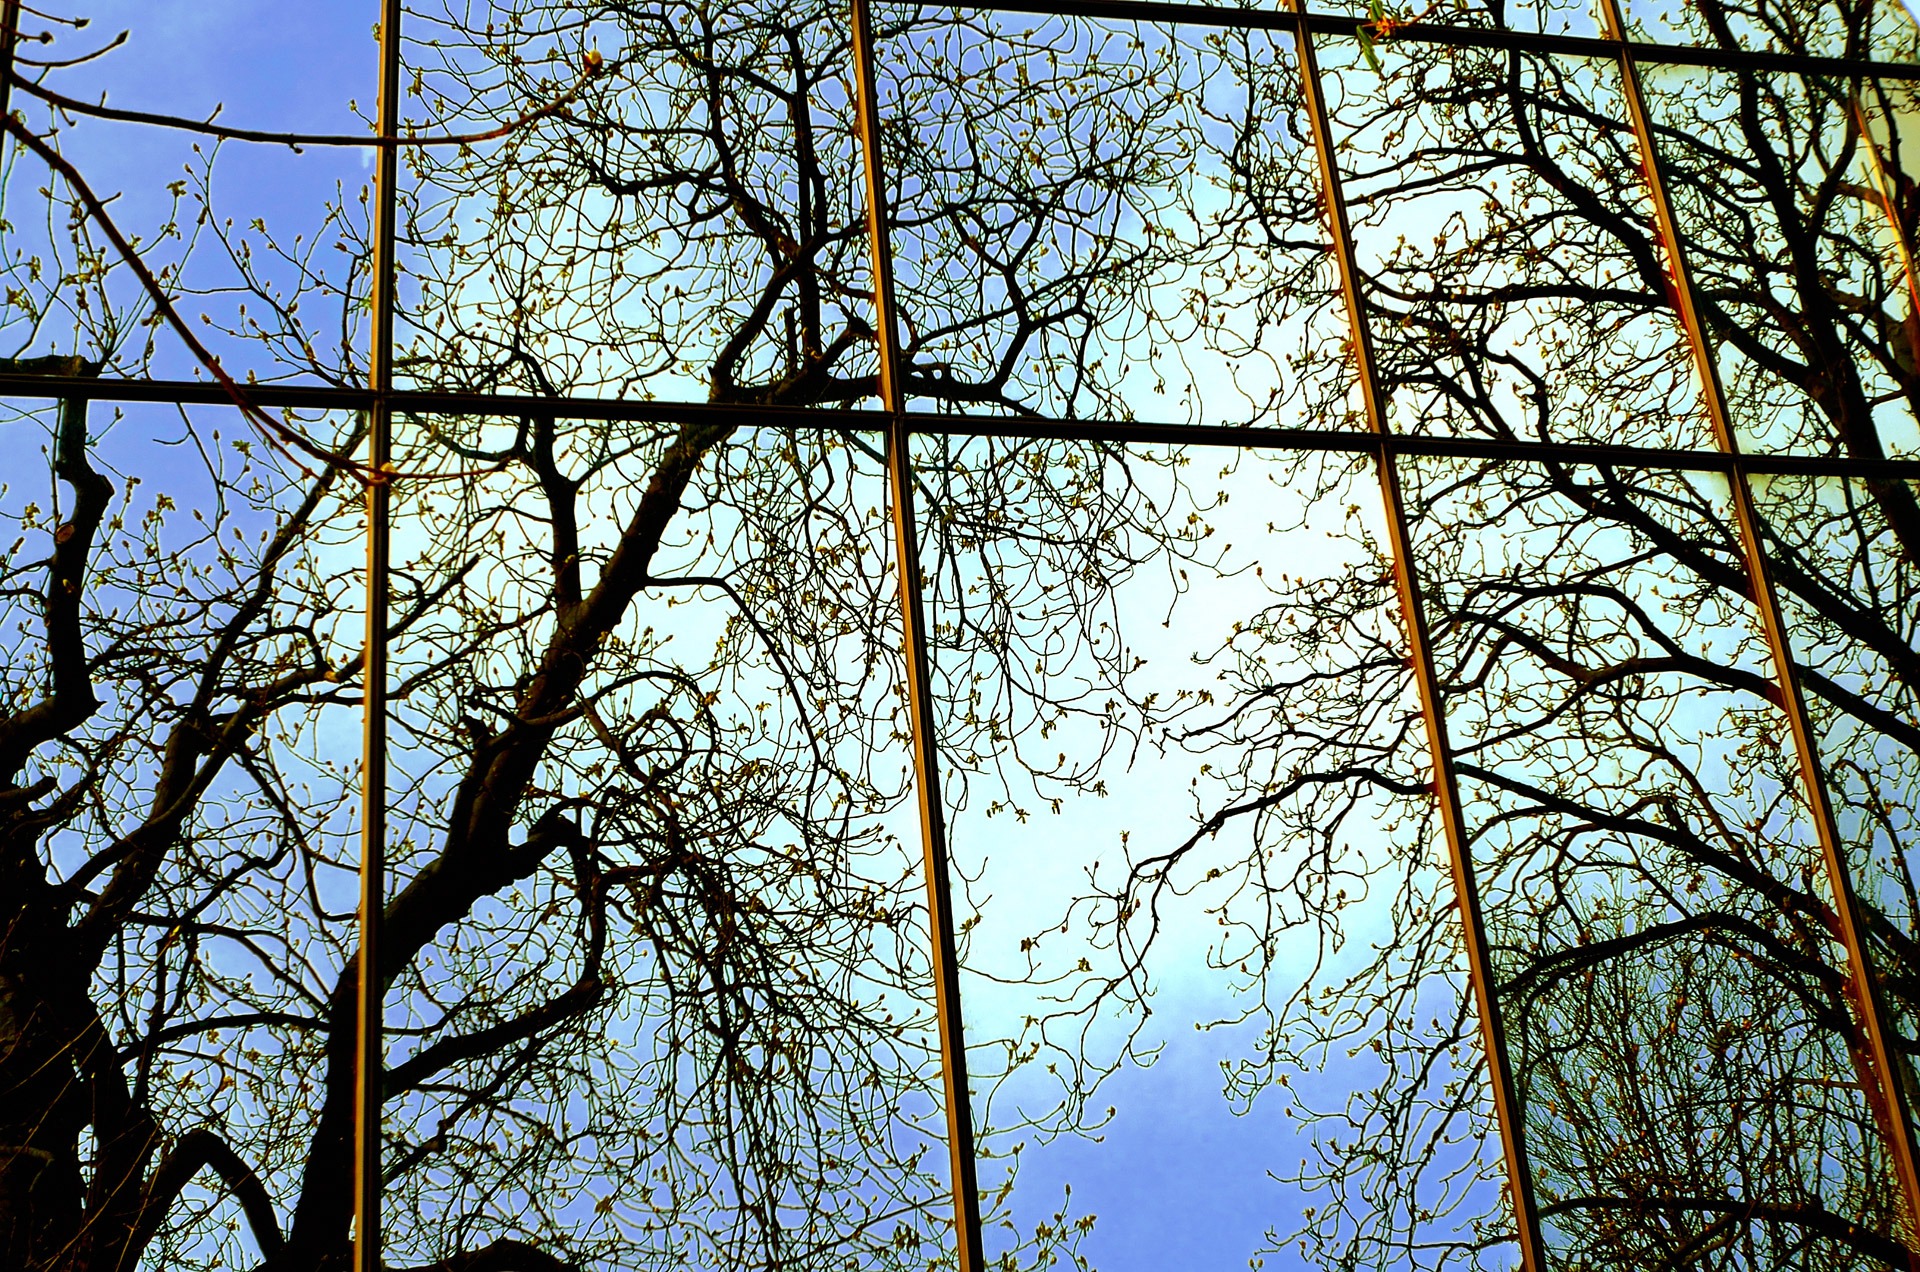 Отражение деревьев в окне